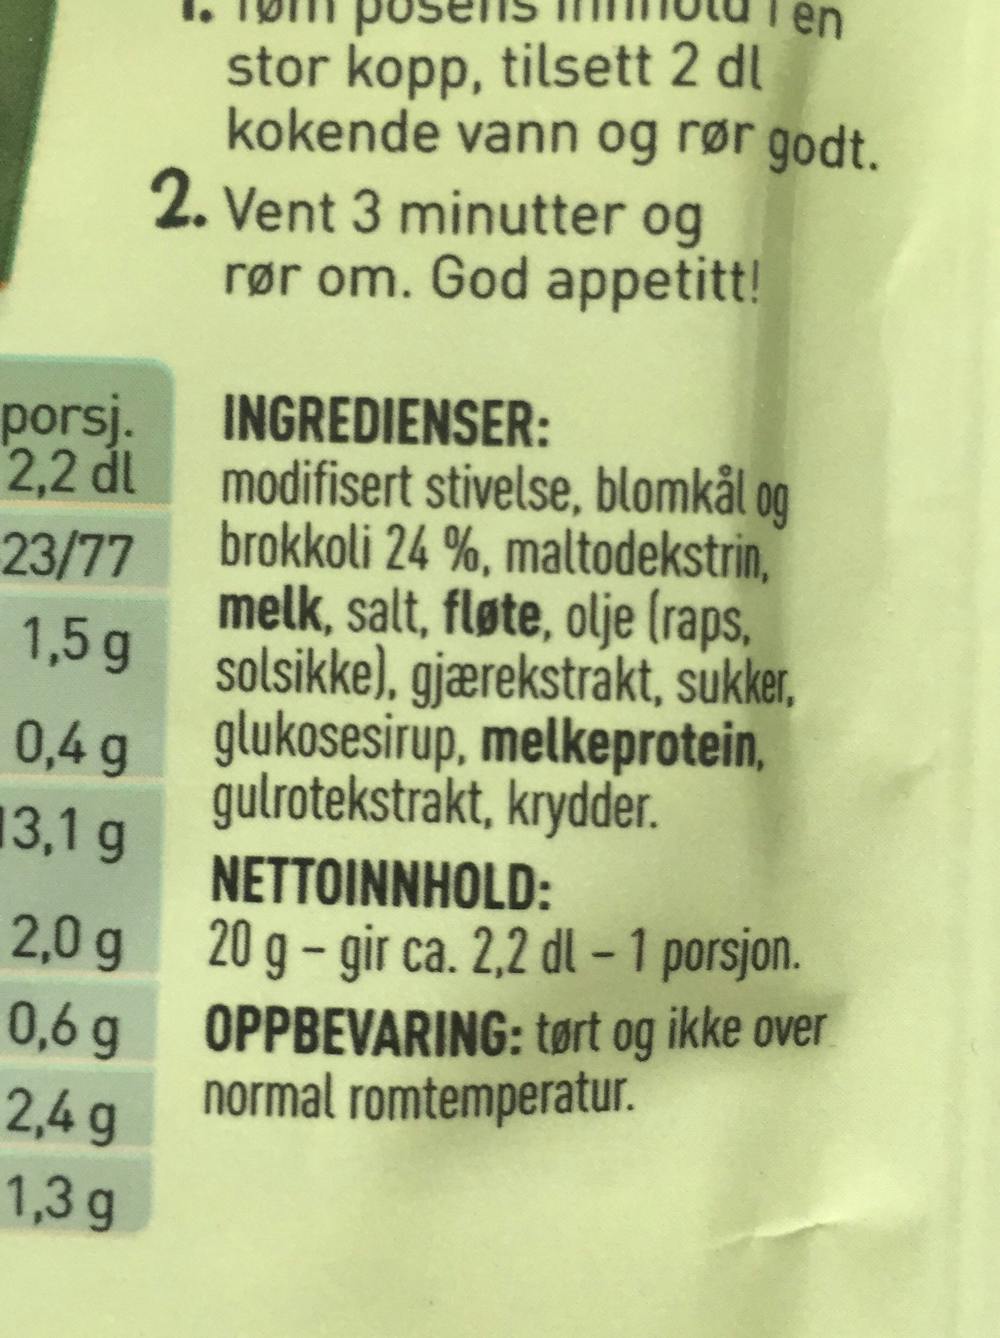 Ingredienslisten til Toro Rett i koppen blomkål- & brokkolisuppe